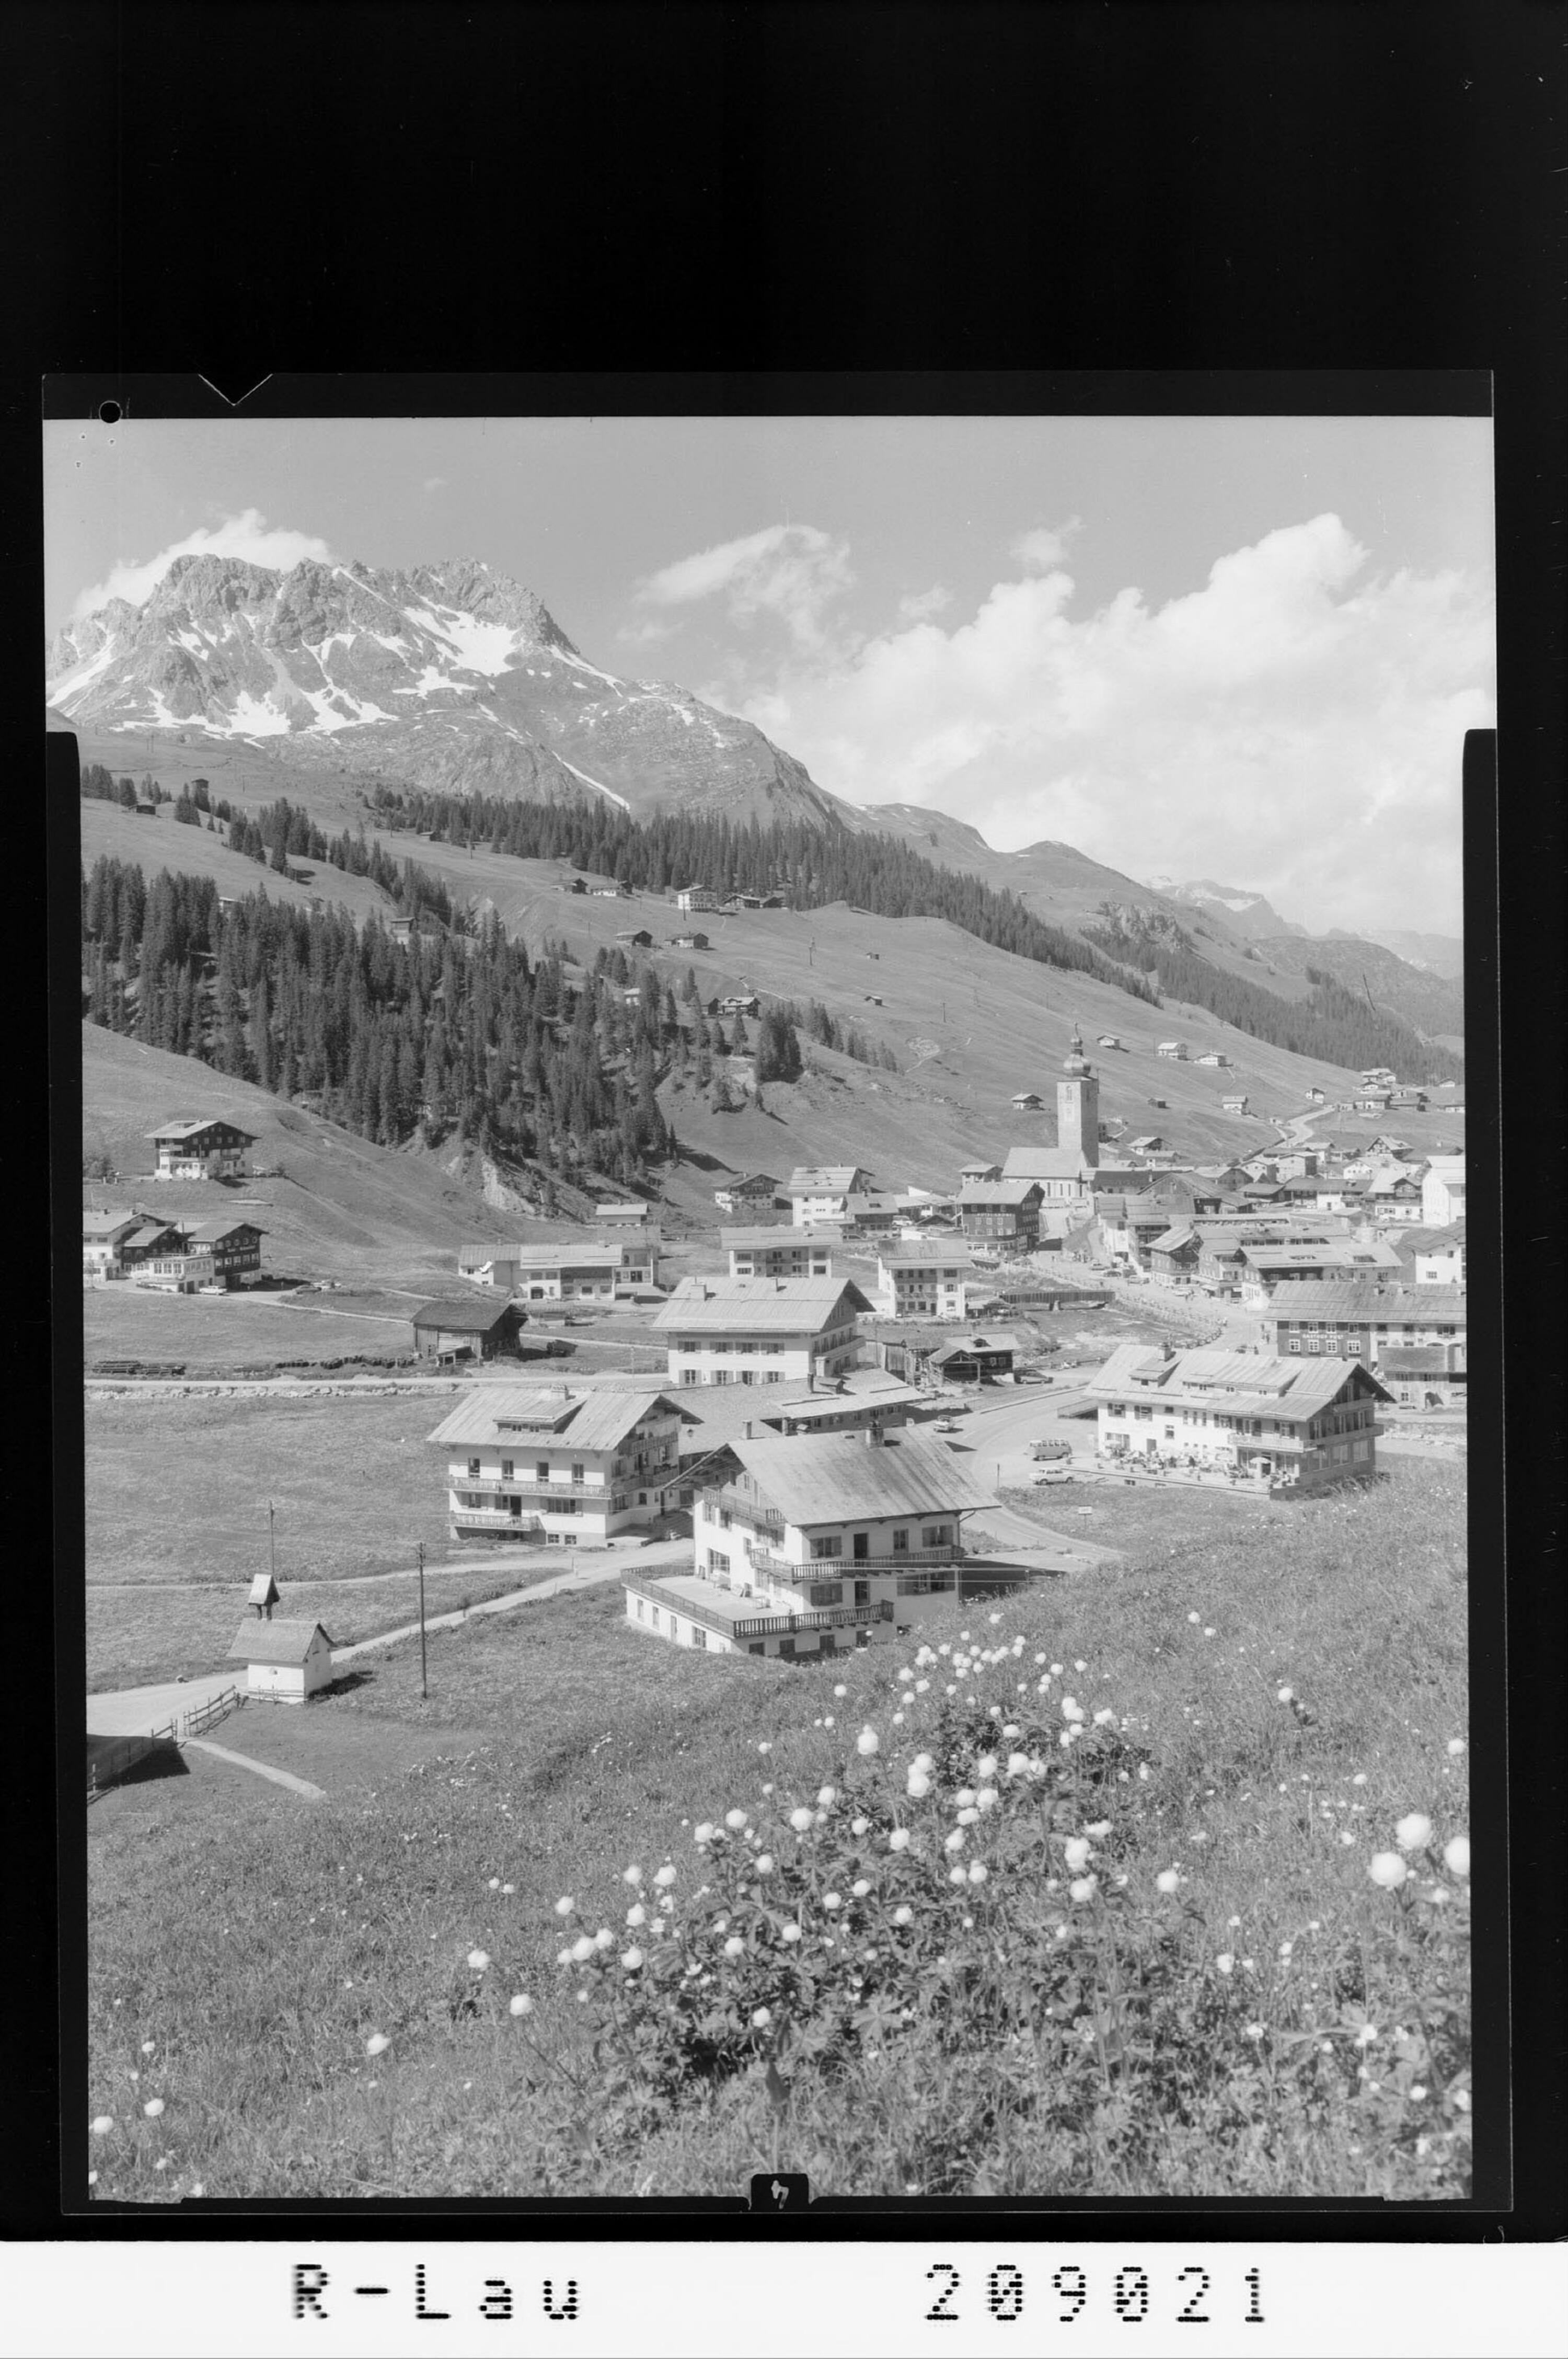 Lech 1447 m am Arlberg mit Karhorn></div>


    <hr>
    <div class=